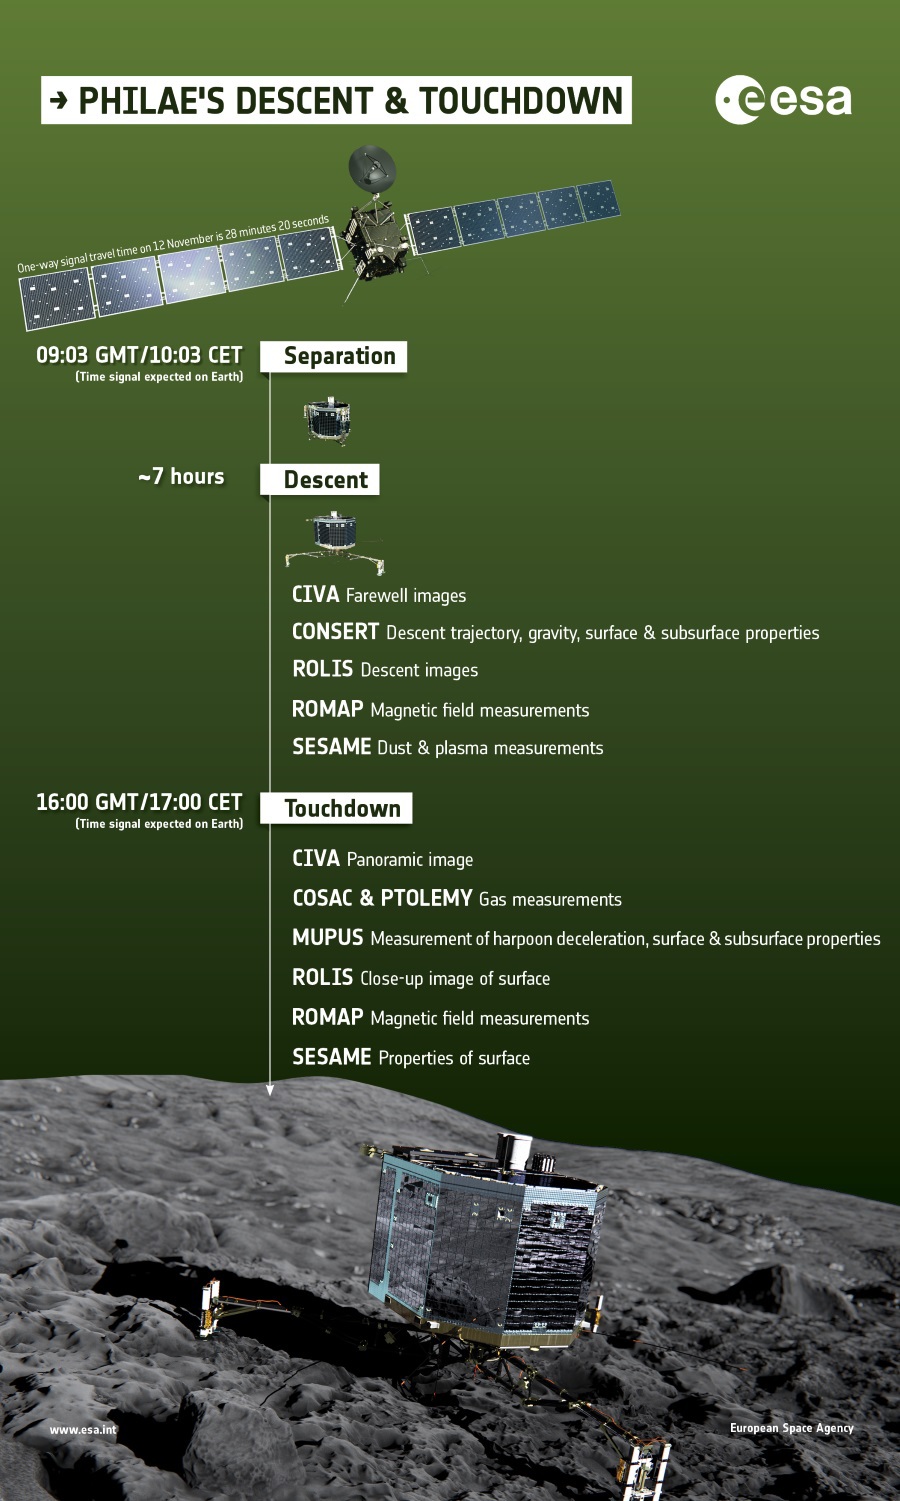 ESA утвердила планы по высадке зонда Philae на комету Чурюмова Герасименко